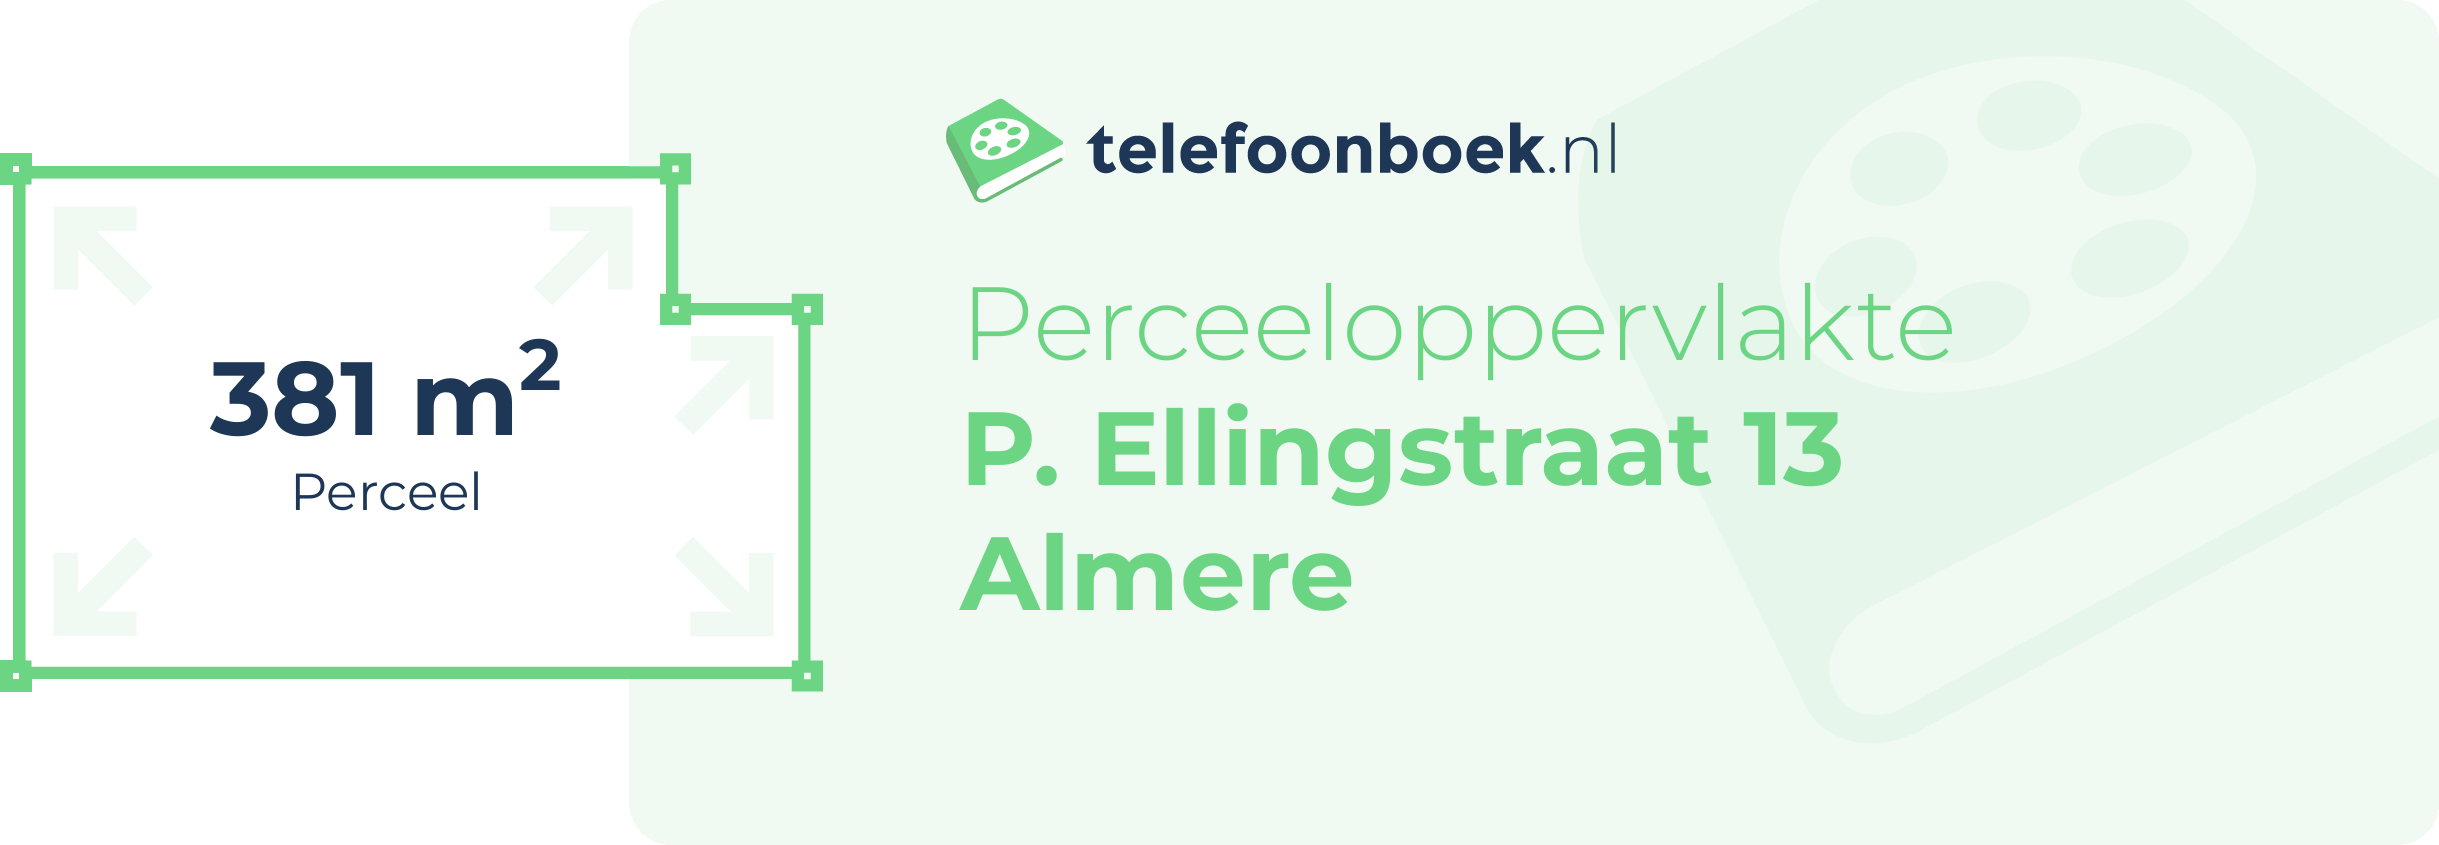 Perceeloppervlakte P. Ellingstraat 13 Almere